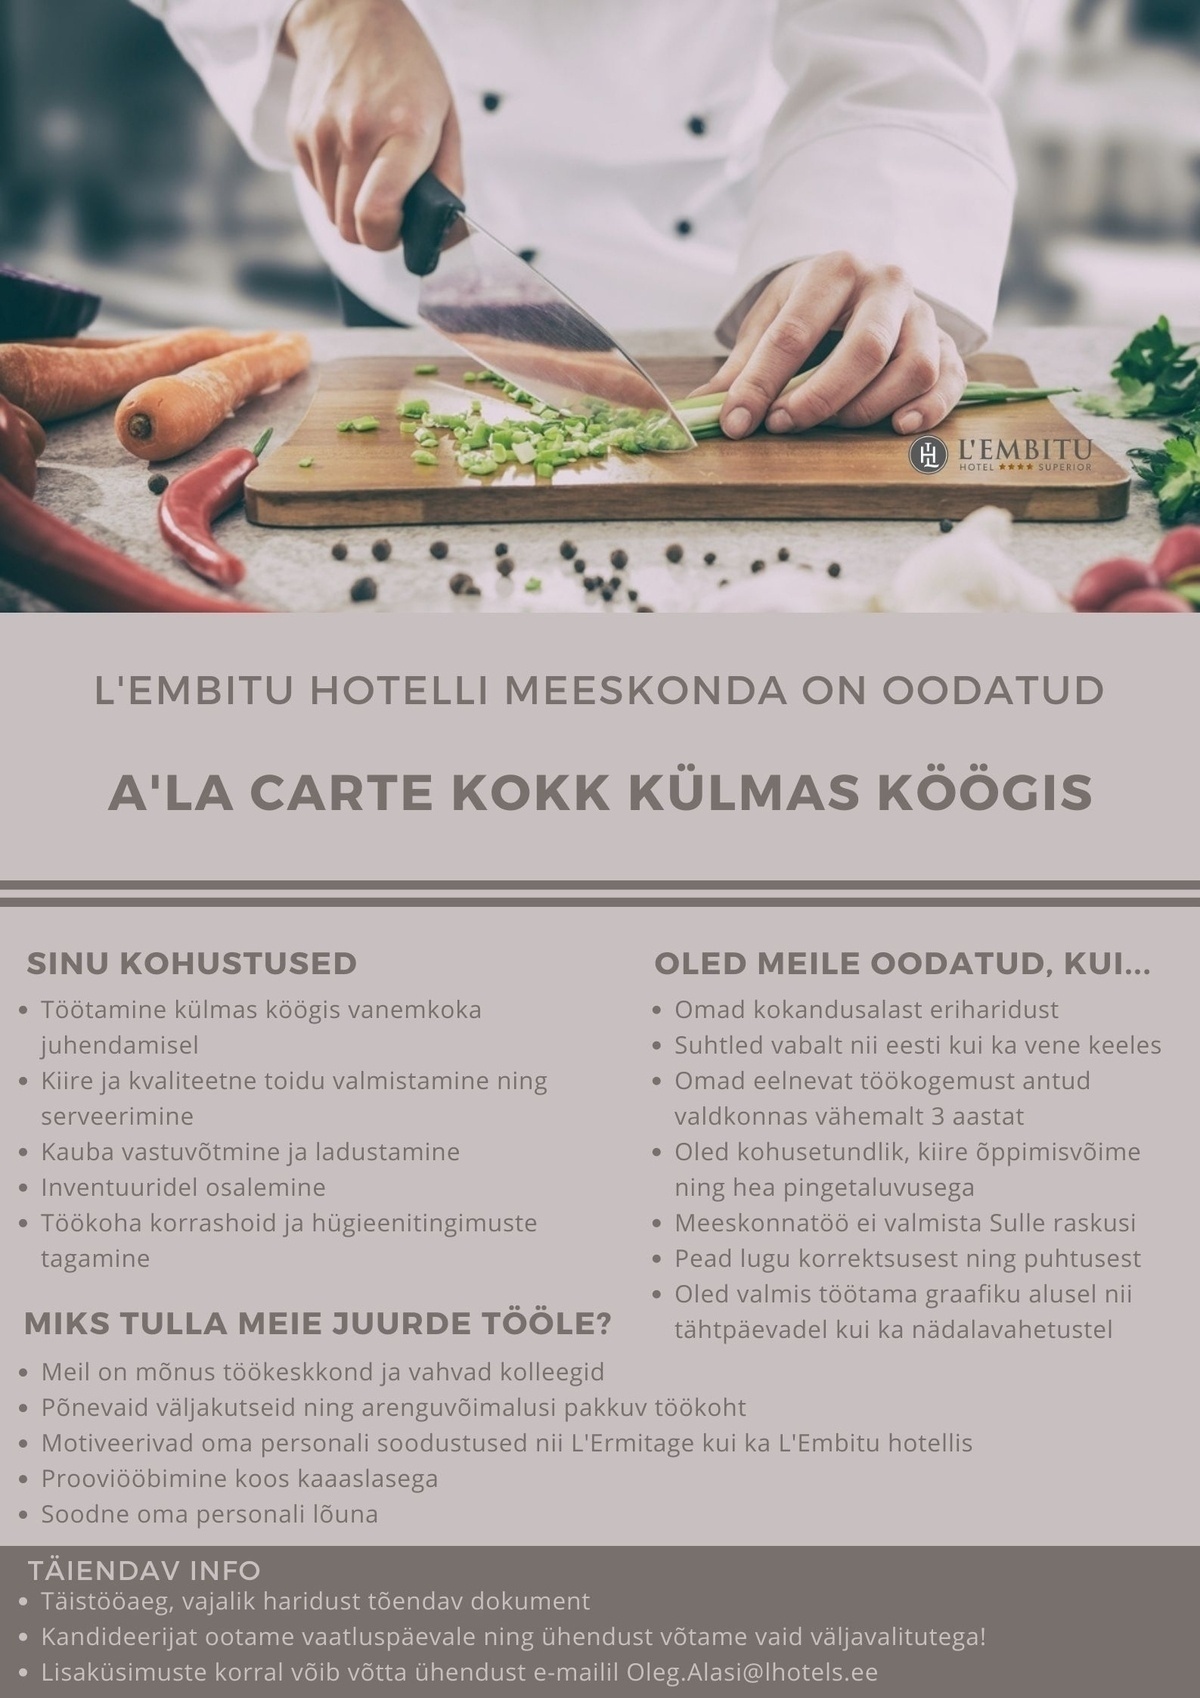 HOTELL L'EMBITU KOKK / KUUM KÖÖK